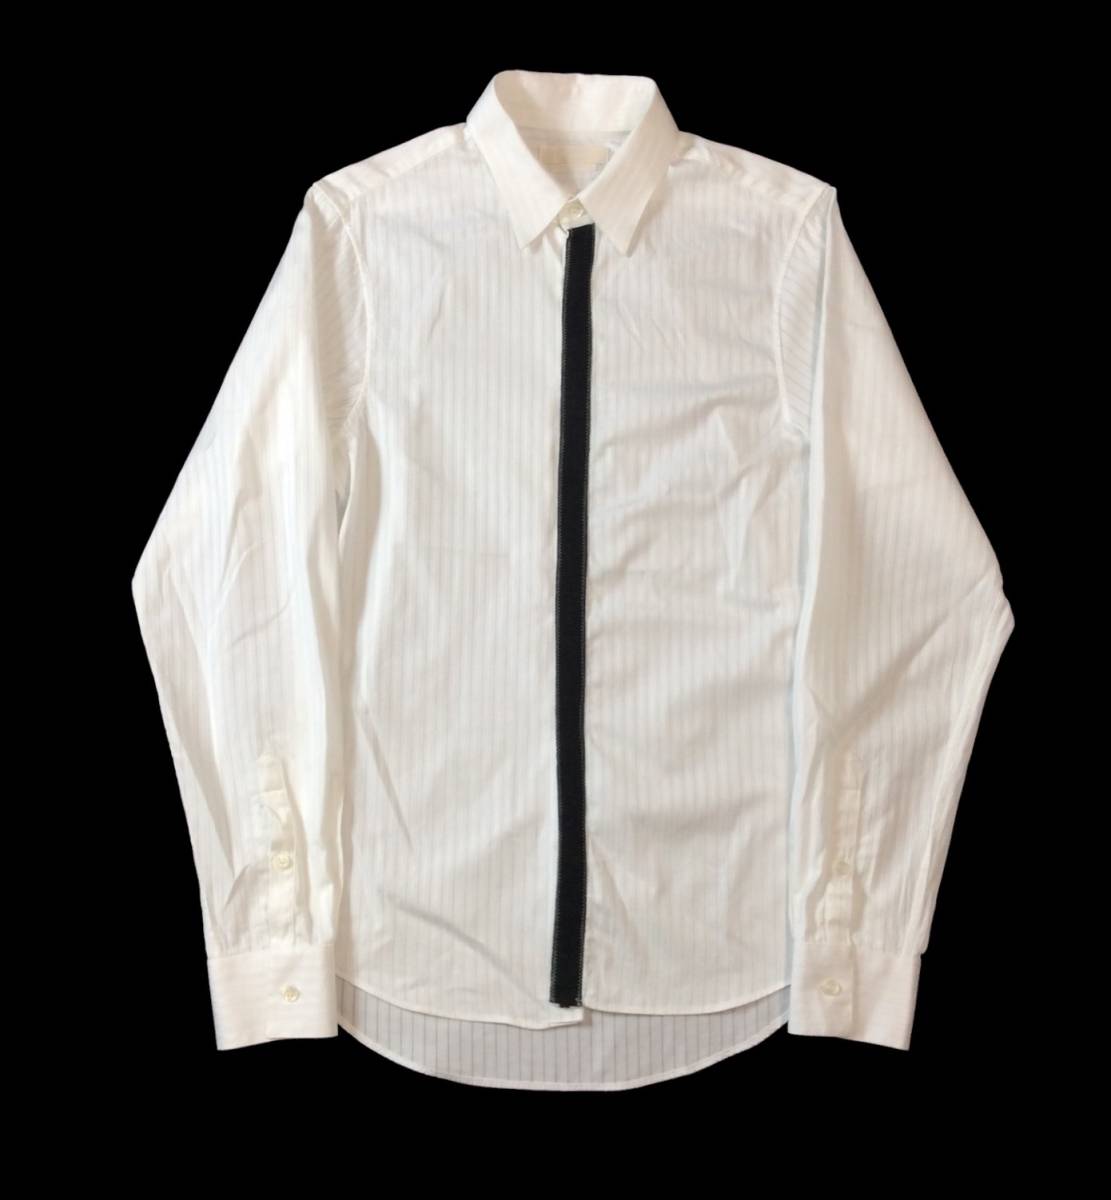 アレキサンダーマックイーン ALEXANDERMcQUEEN ITALY製 ストライプ ドレスシャツ 長袖 隠しボタン ホワイト/ブラック メンズ 46 (ma)